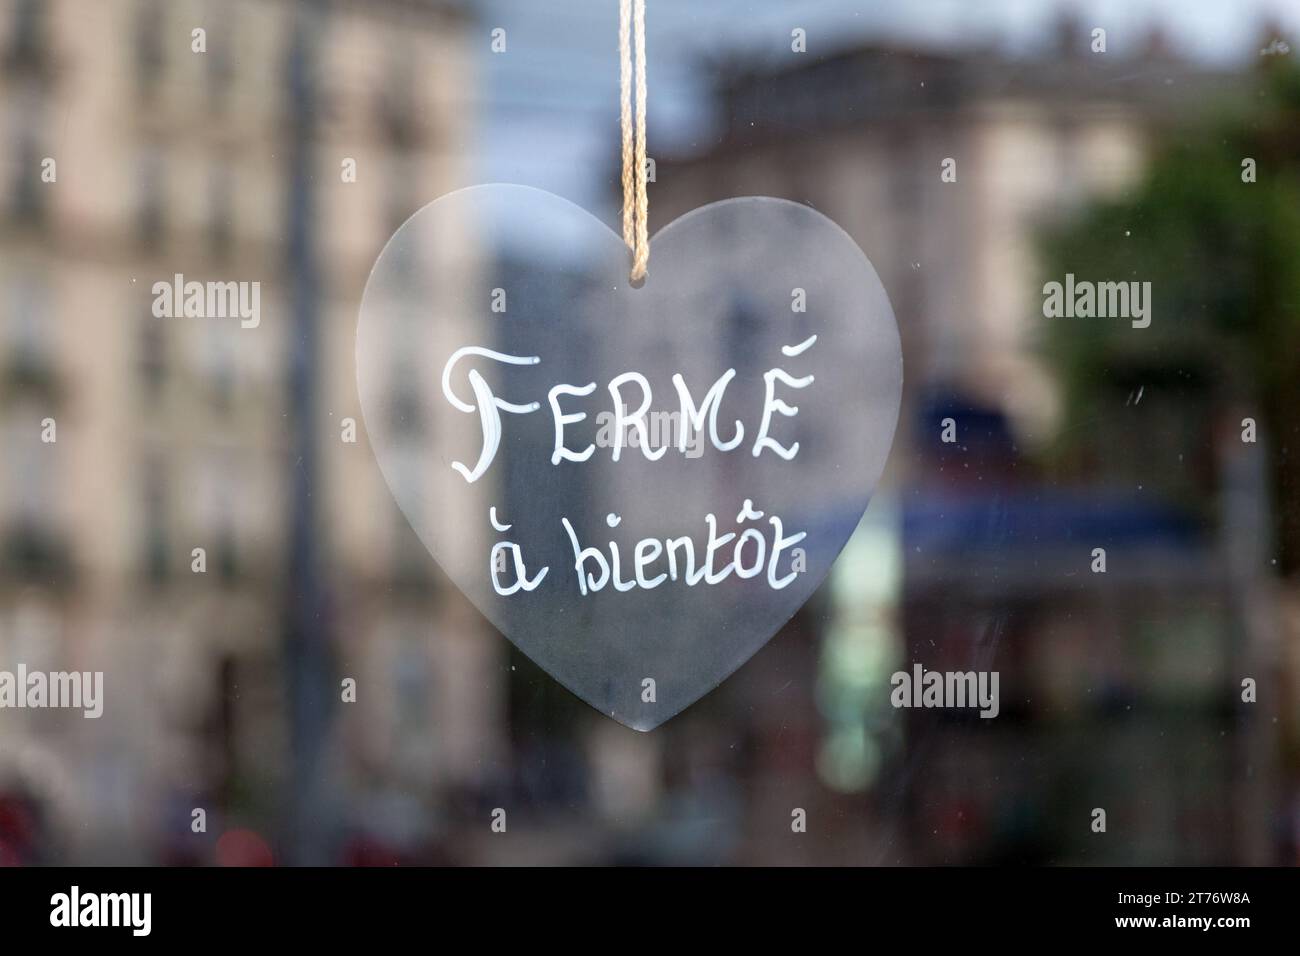 Nahaufnahme eines herzförmigen Schildes mit der Aufschrift „Fermé, à bientôt“, was auf Englisch „geschlossen, bis bald“ bedeutet. Stockfoto